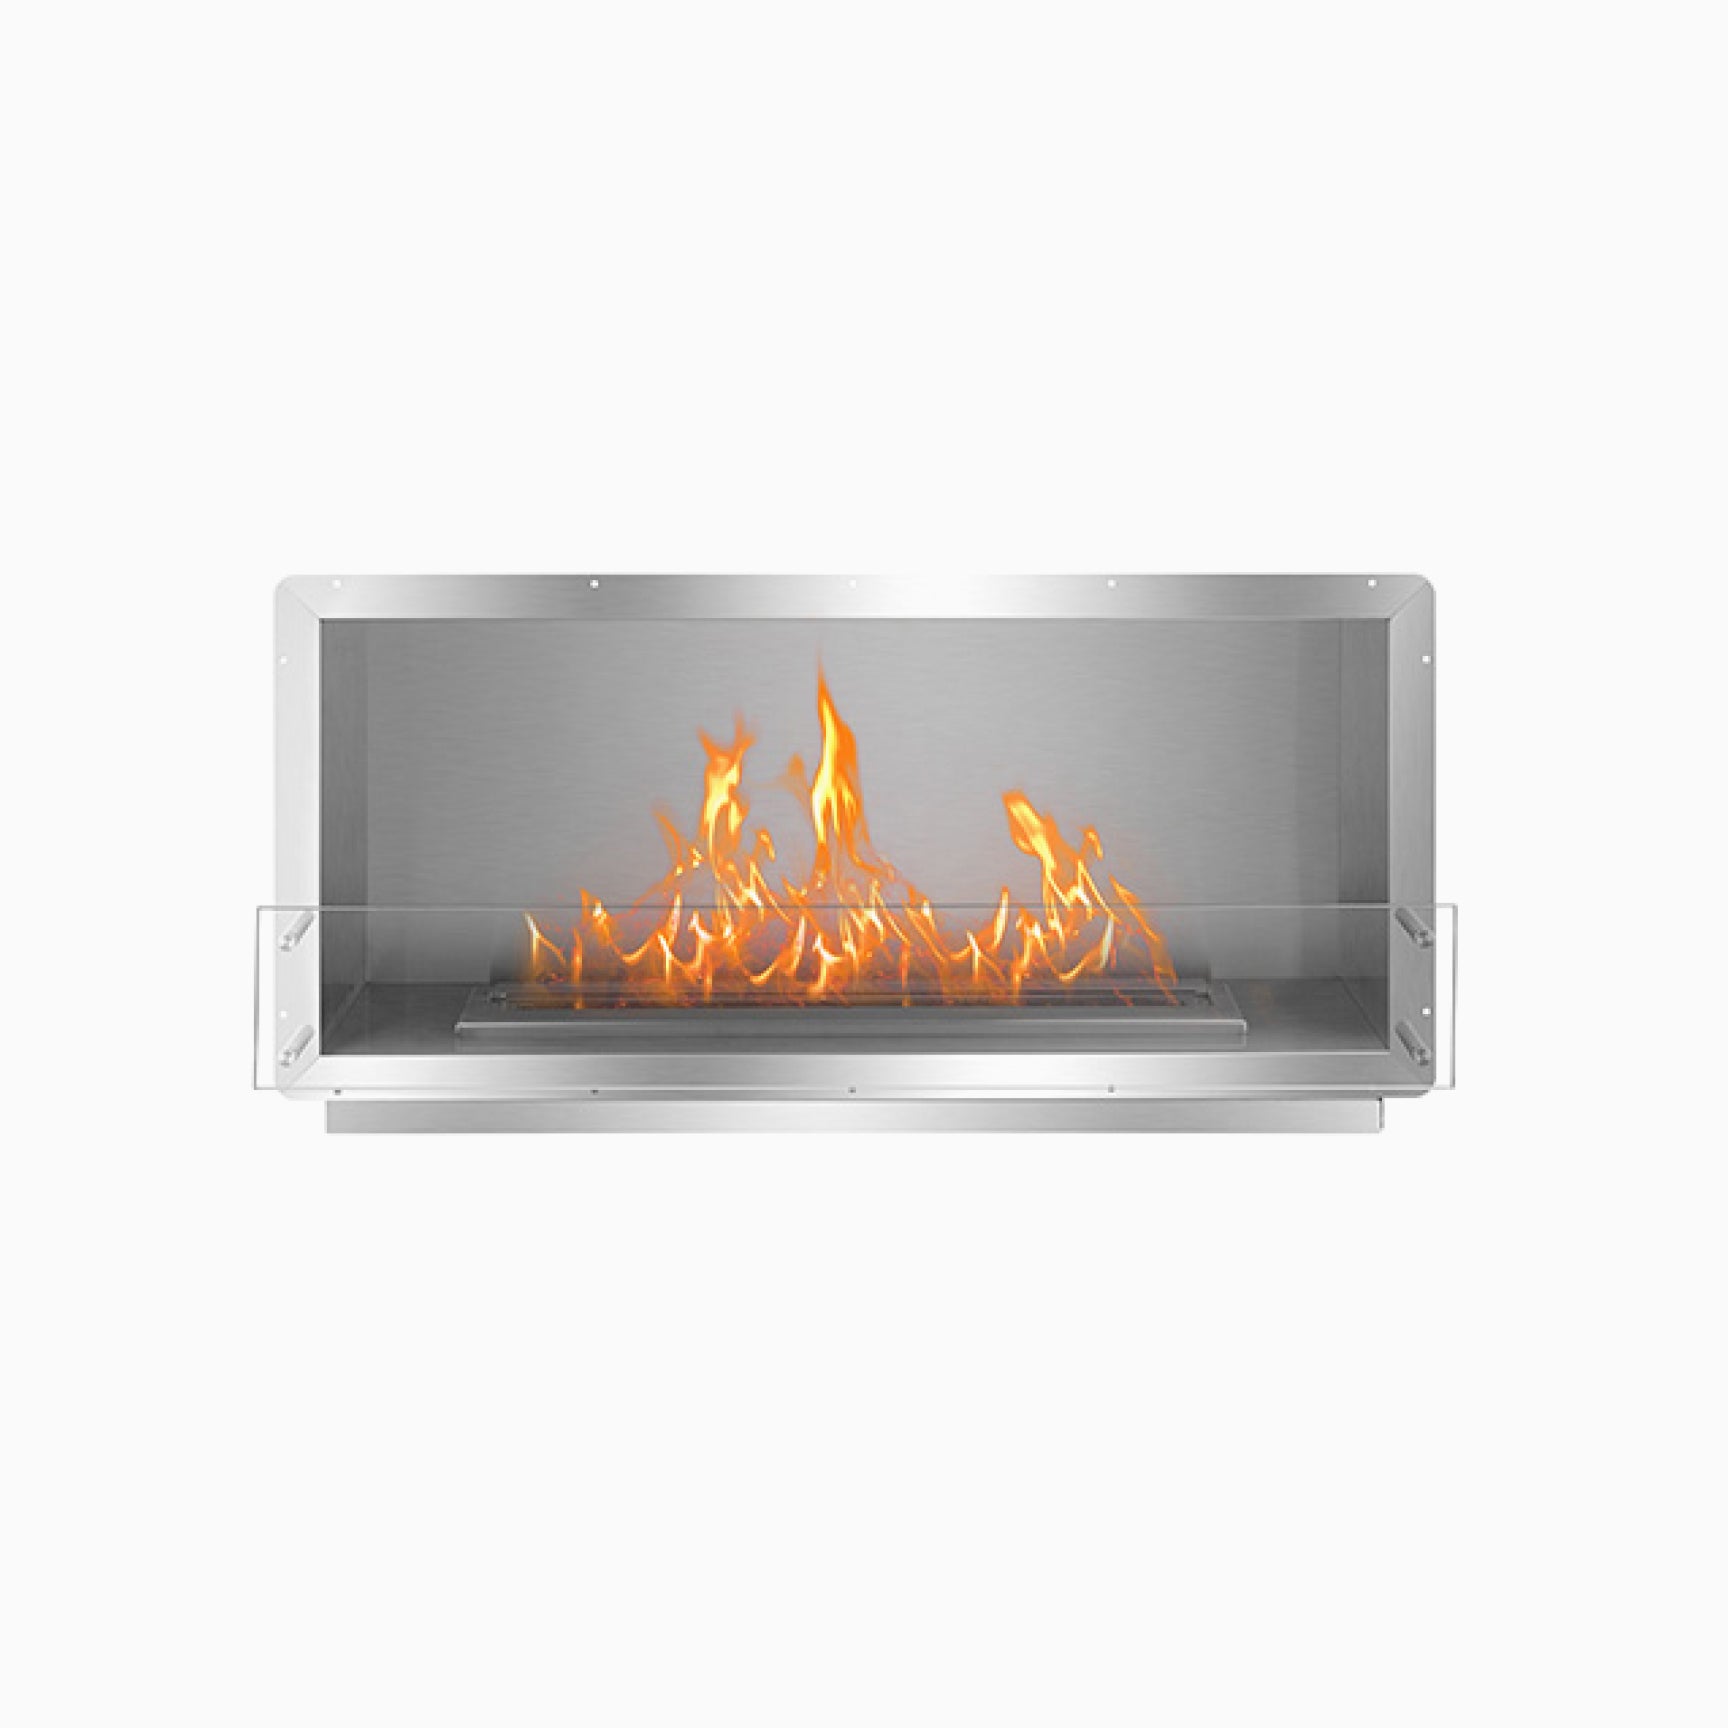 XL500 Brûleur Éthanol: Belle flamme tendue - EcoSmart Fire